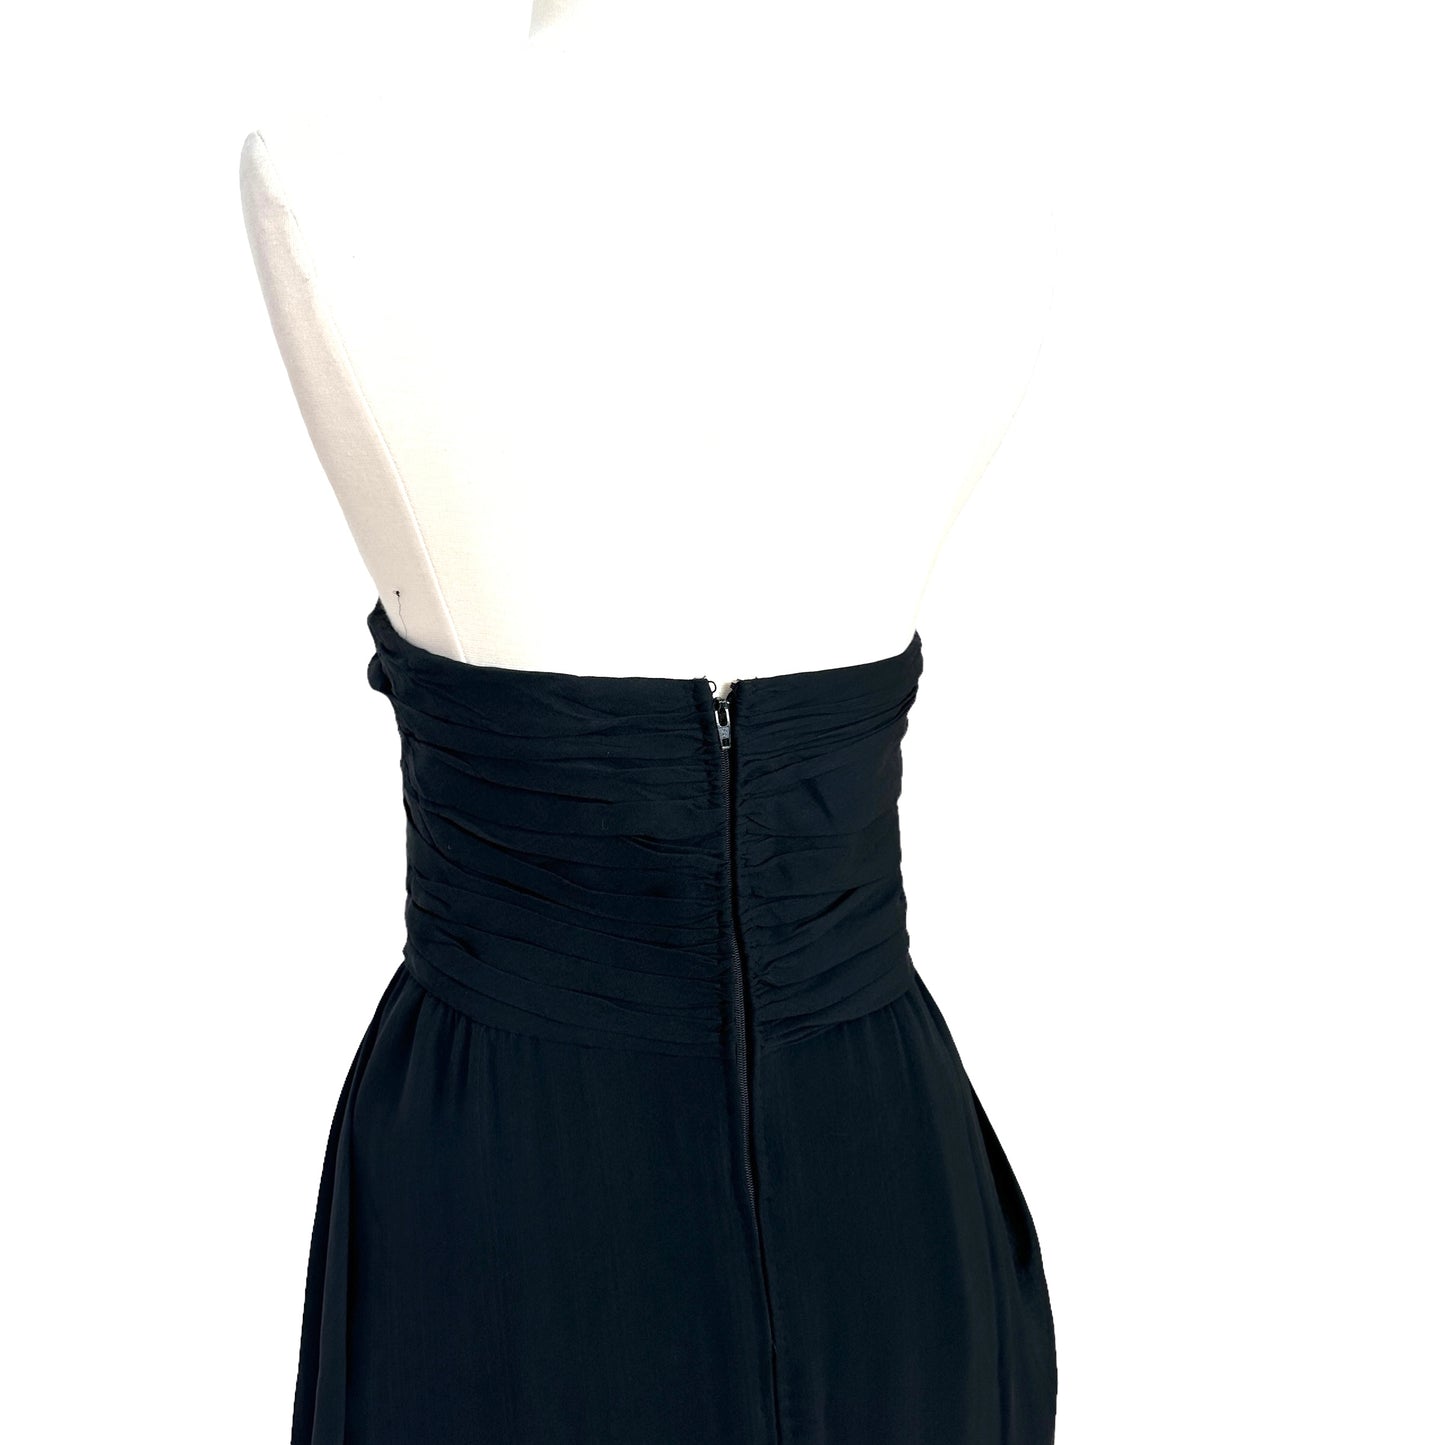 Vintage Bustier Black Dress - S/M